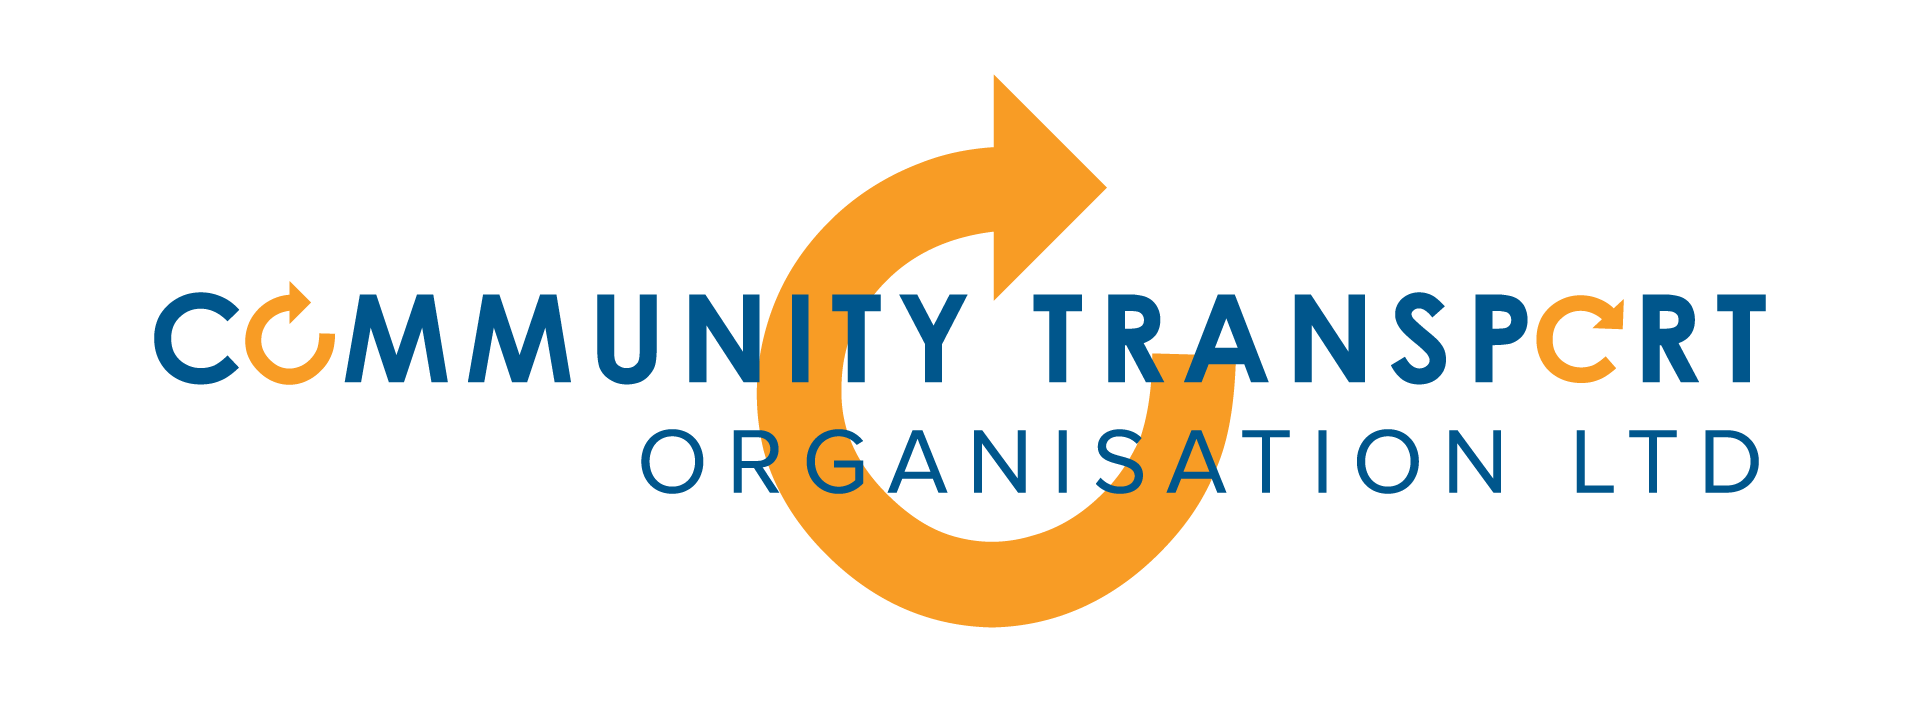 Community Transport Organisation